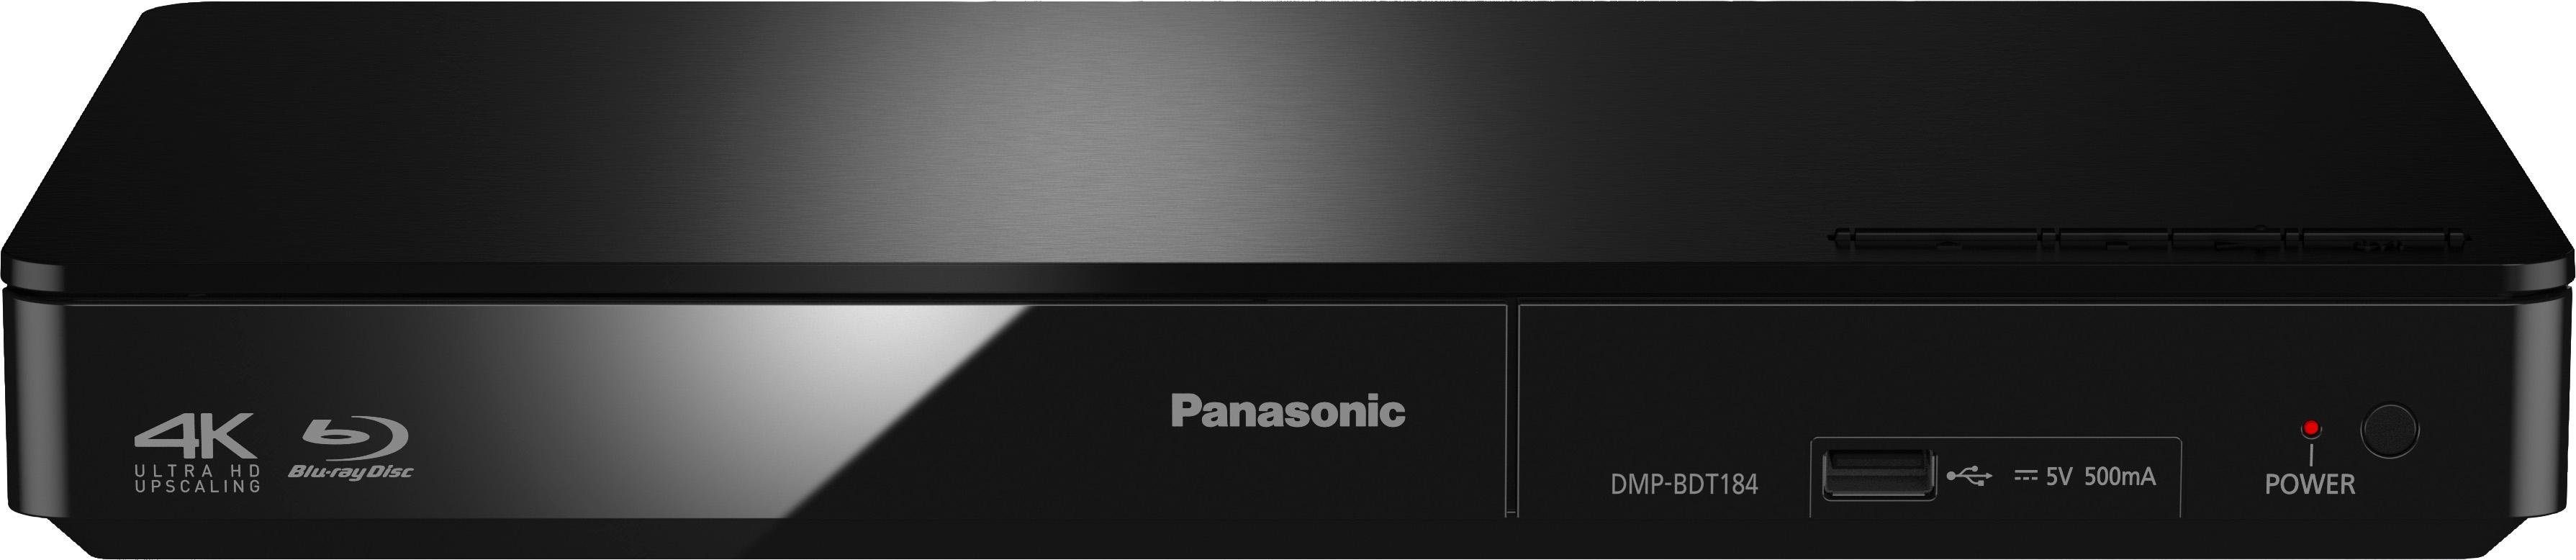 Panasonic DMP-BDT184 Blu-ray-Player schwarz (Ethernet), / Upscaling, 4K Schnellstart-Modus) (LAN DMP-BDT185